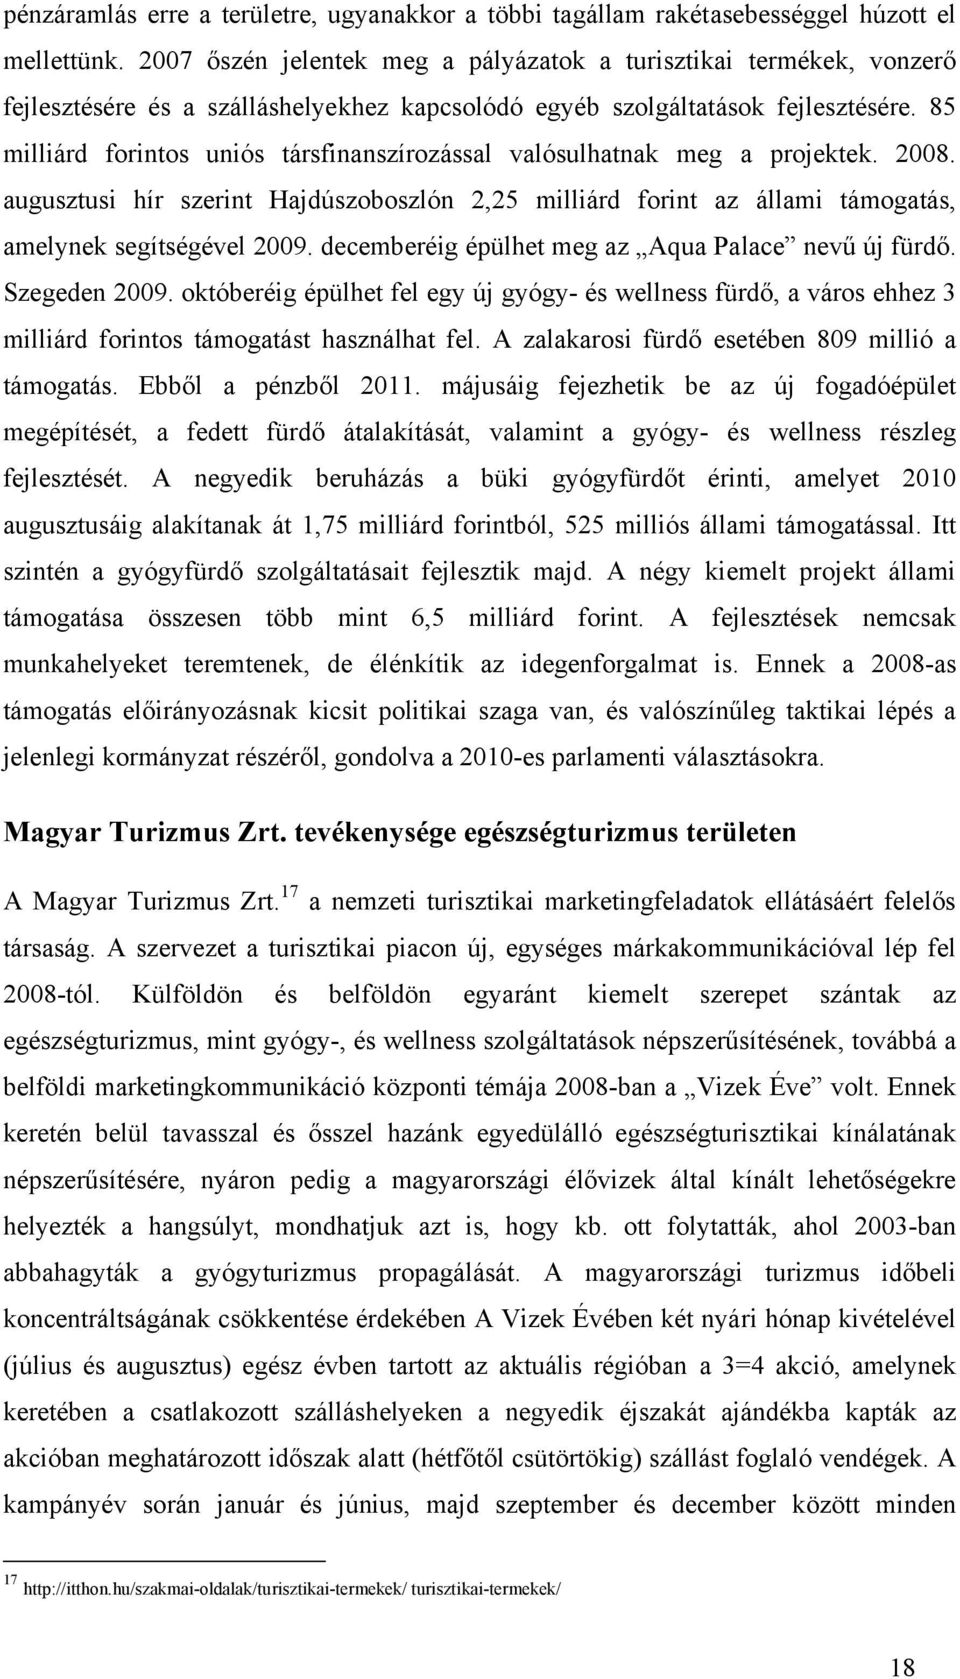 85 milliárd forintos uniós társfinanszírozással valósulhatnak meg a projektek. 2008. augusztusi hír szerint Hajdúszoboszlón 2,25 milliárd forint az állami támogatás, amelynek segítségével 2009.